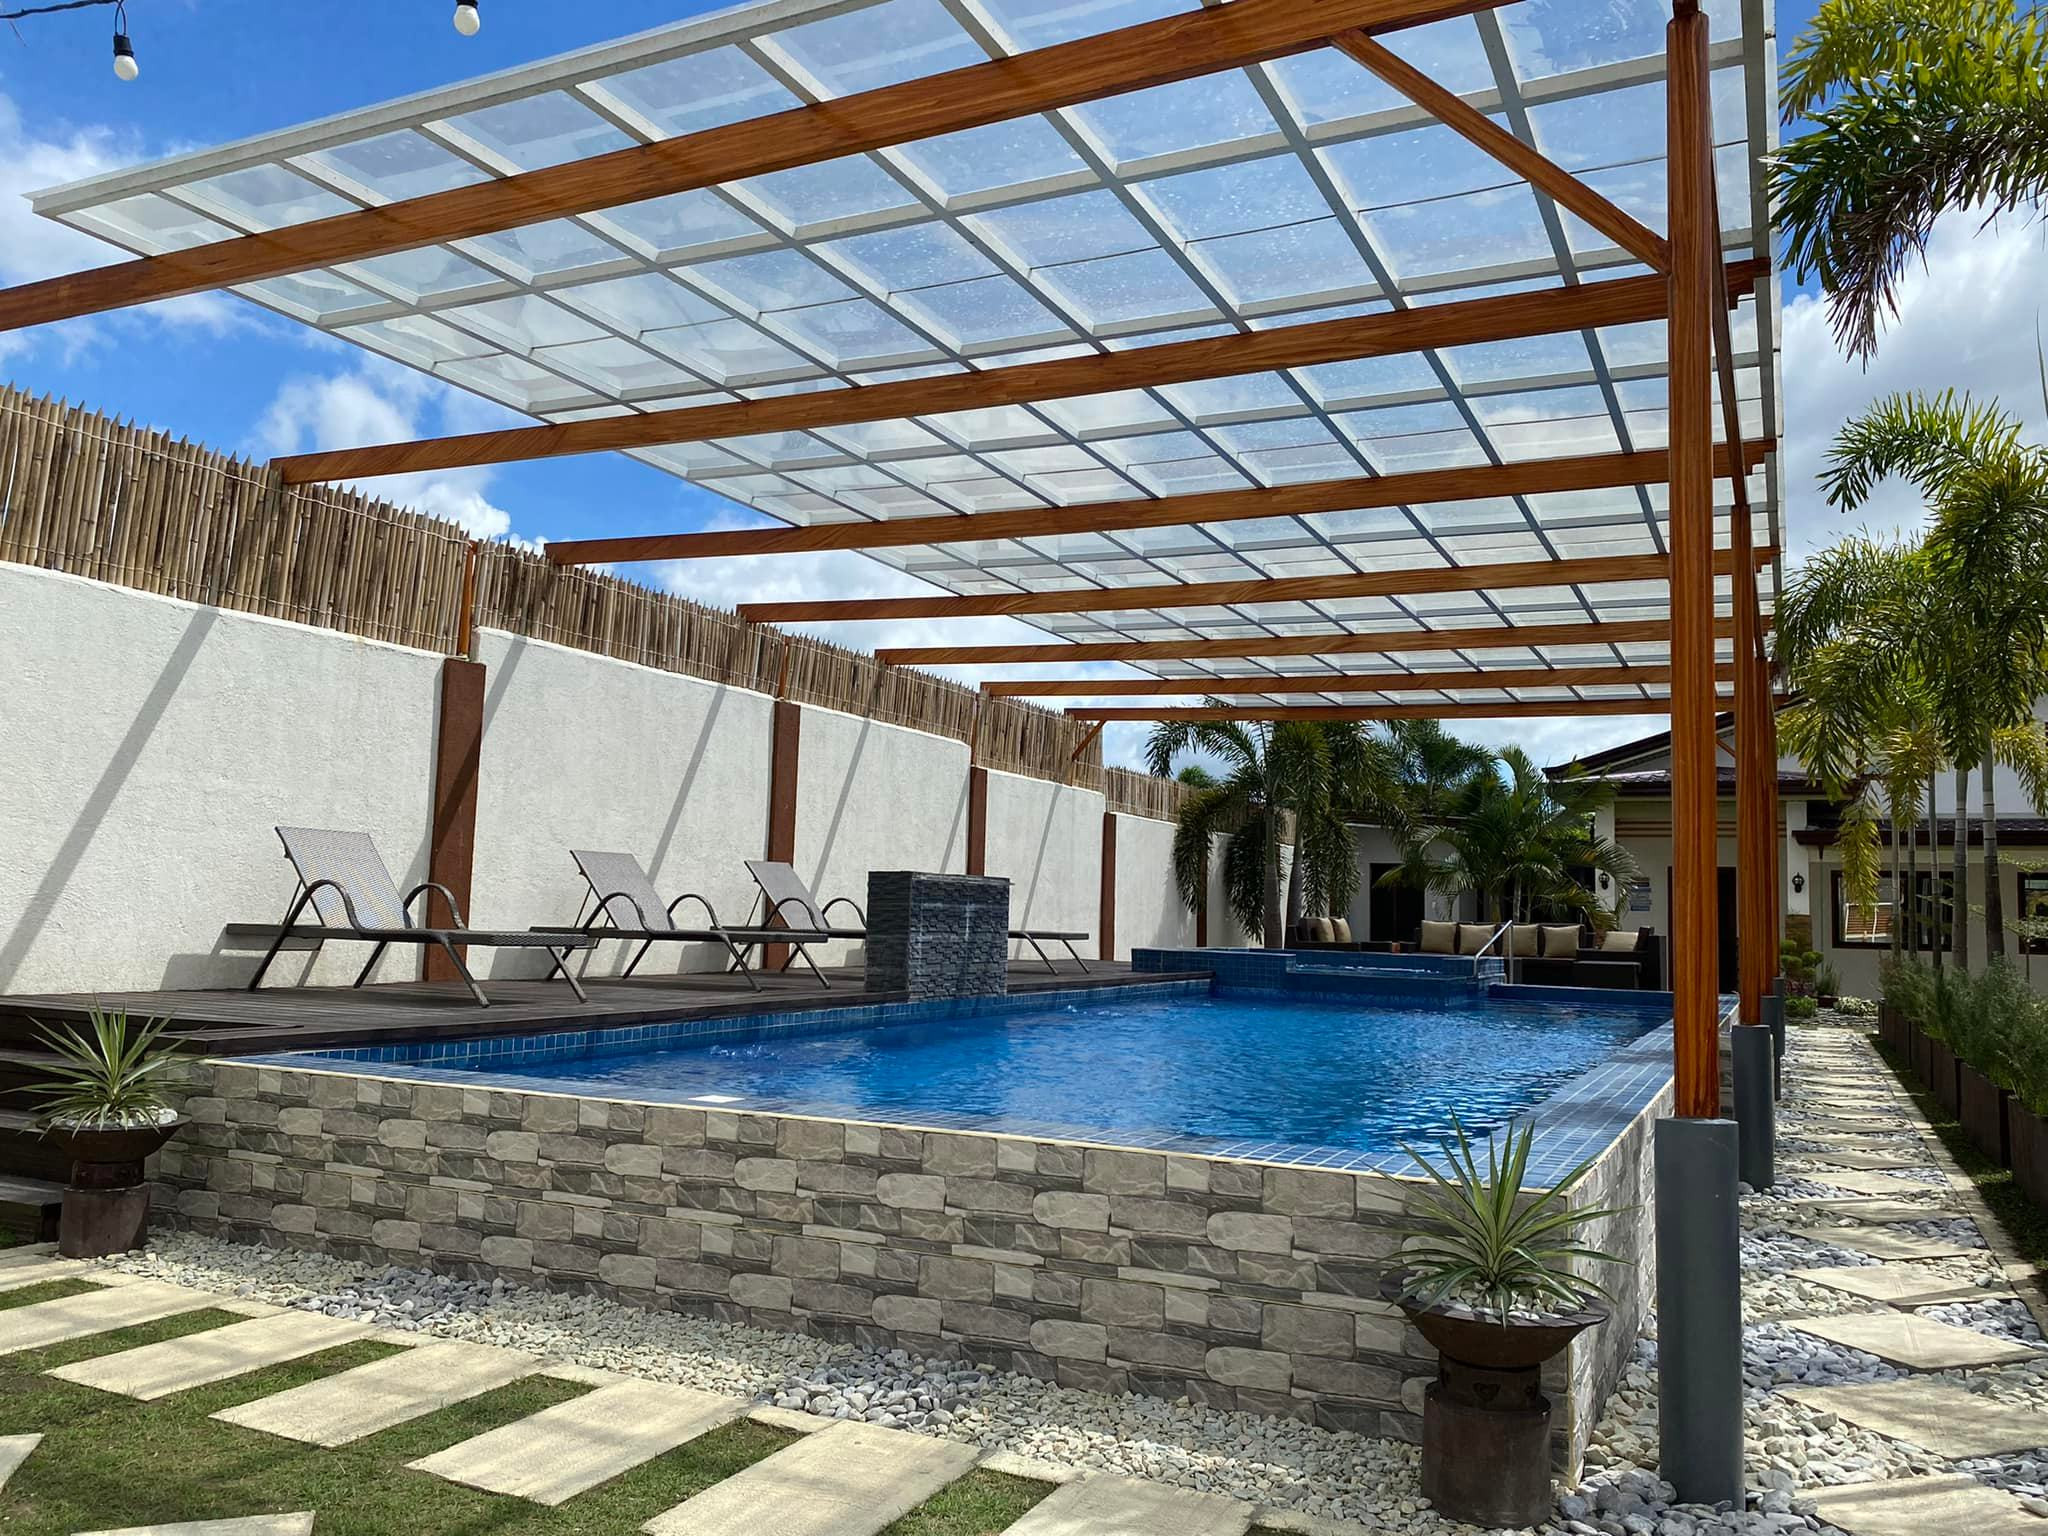 Bale Juacas Private Resort